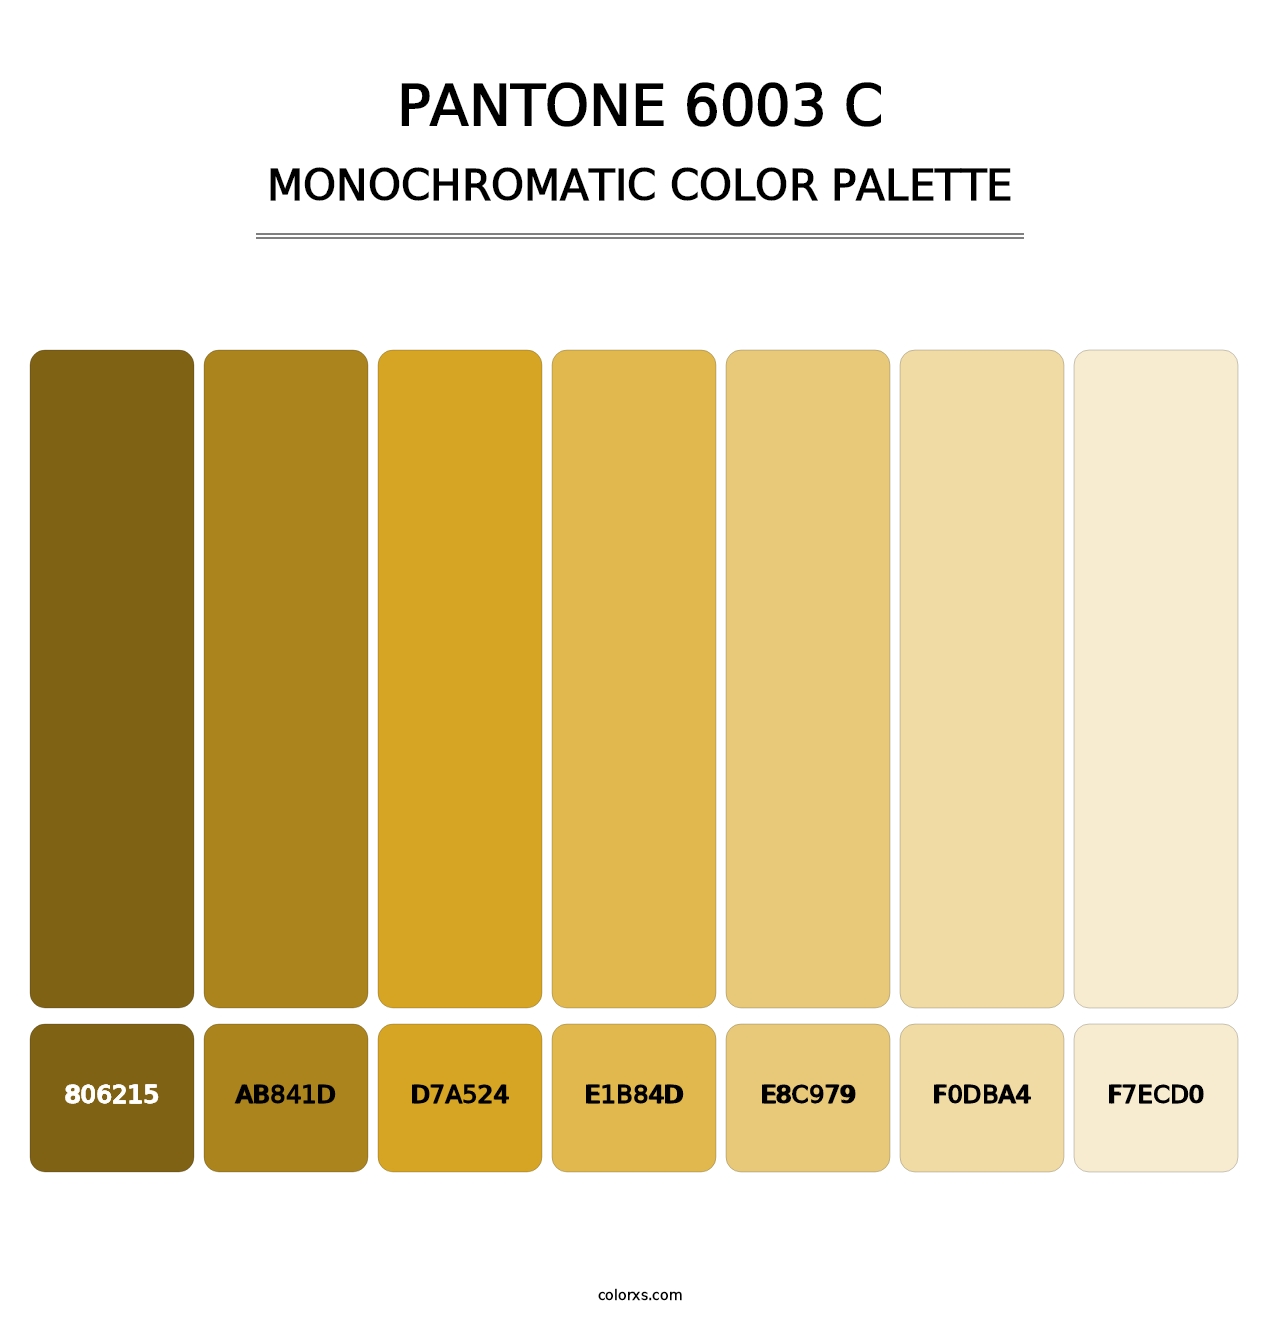 PANTONE 6003 C - Monochromatic Color Palette